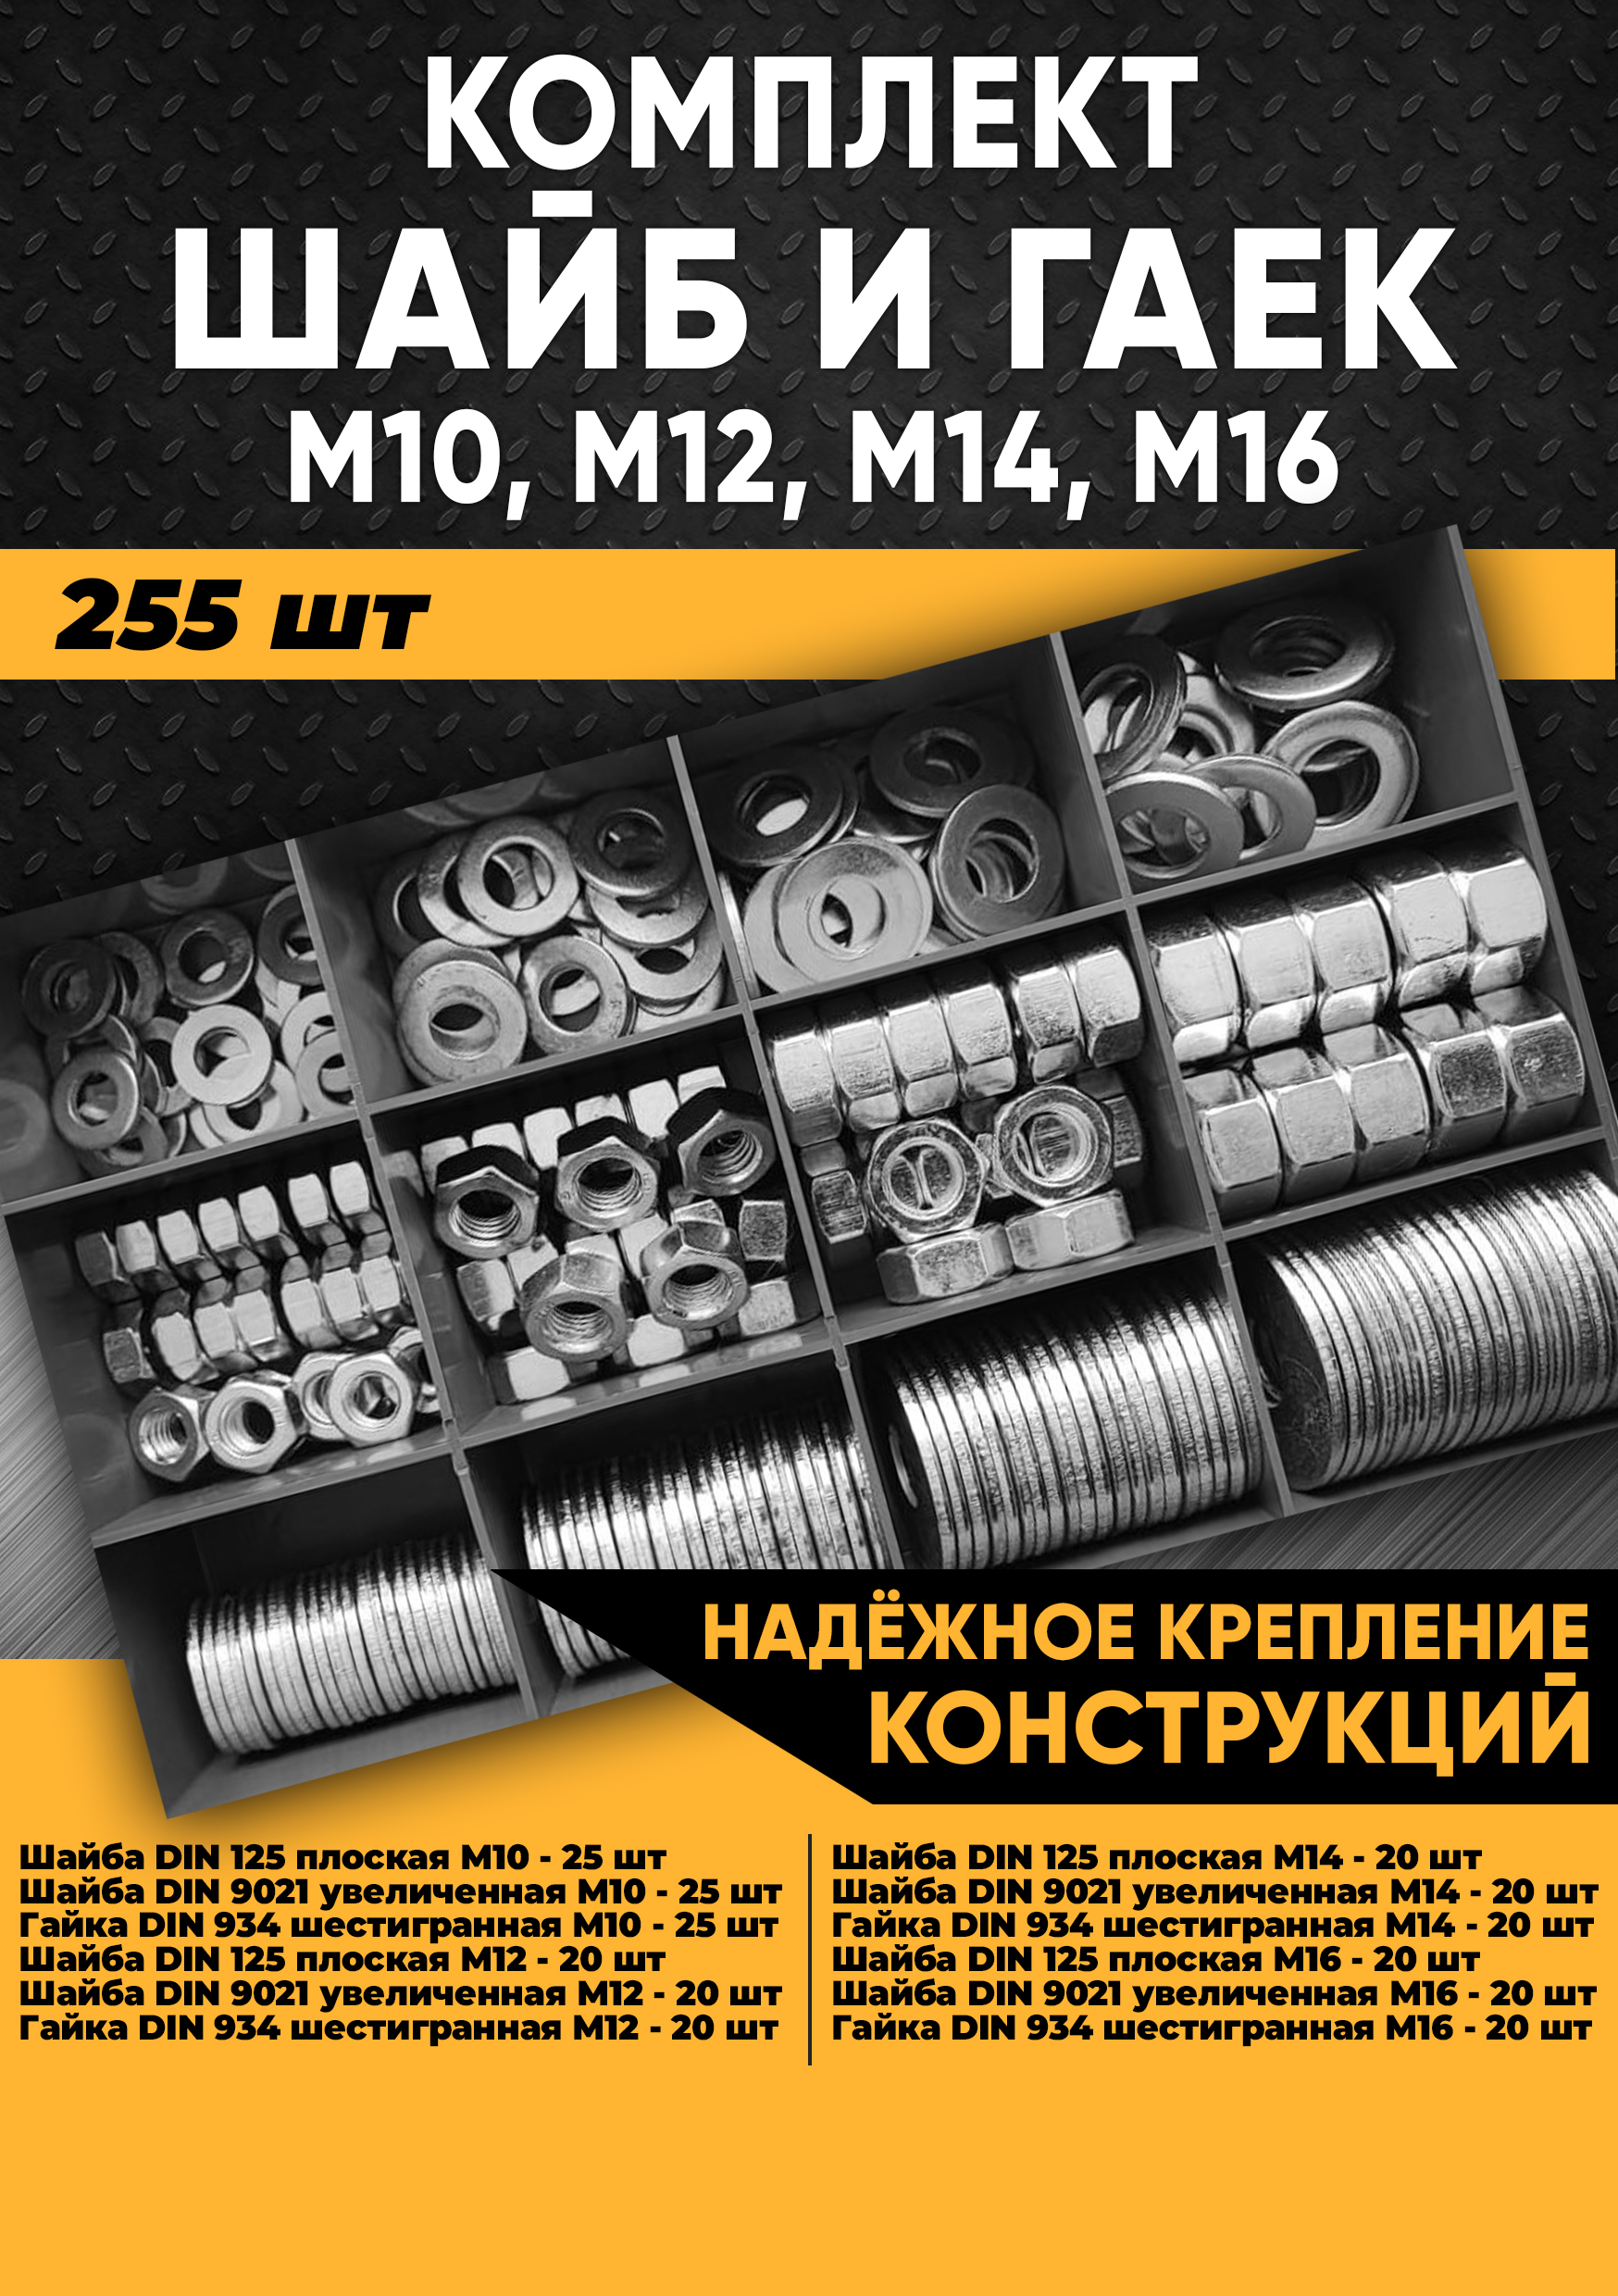 Комплект шайб и гаек М10, М12, М14, М16 - 255 шт. в органайзере, KraSimall 100171